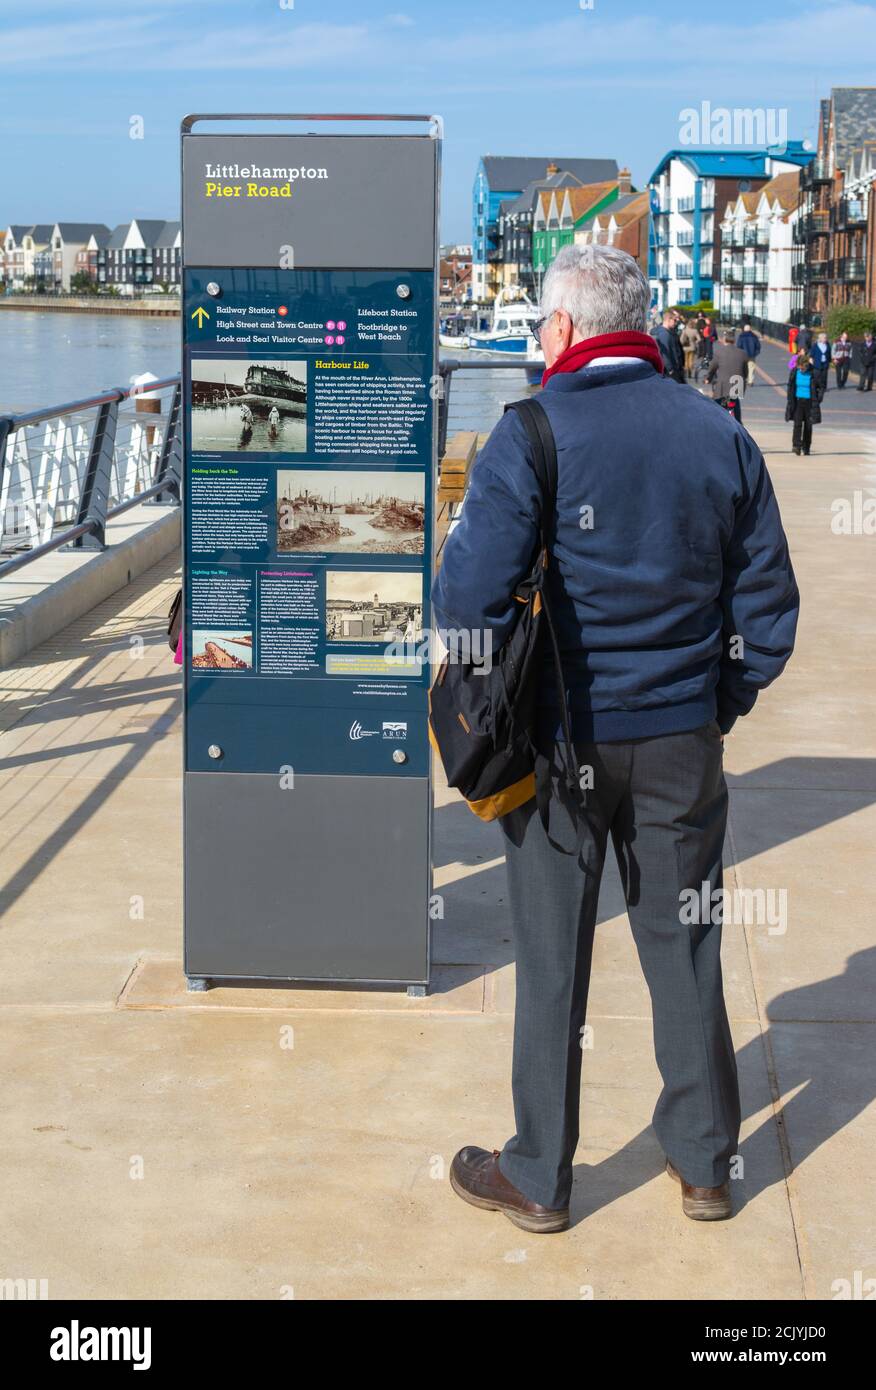 Mann, der an einem Hinweisschild mit historischen Informationen über Littlehampton, auf dem Schlepppfad in Pier Road, Littlehampton, West Sussex, England, Großbritannien, steht. Stockfoto